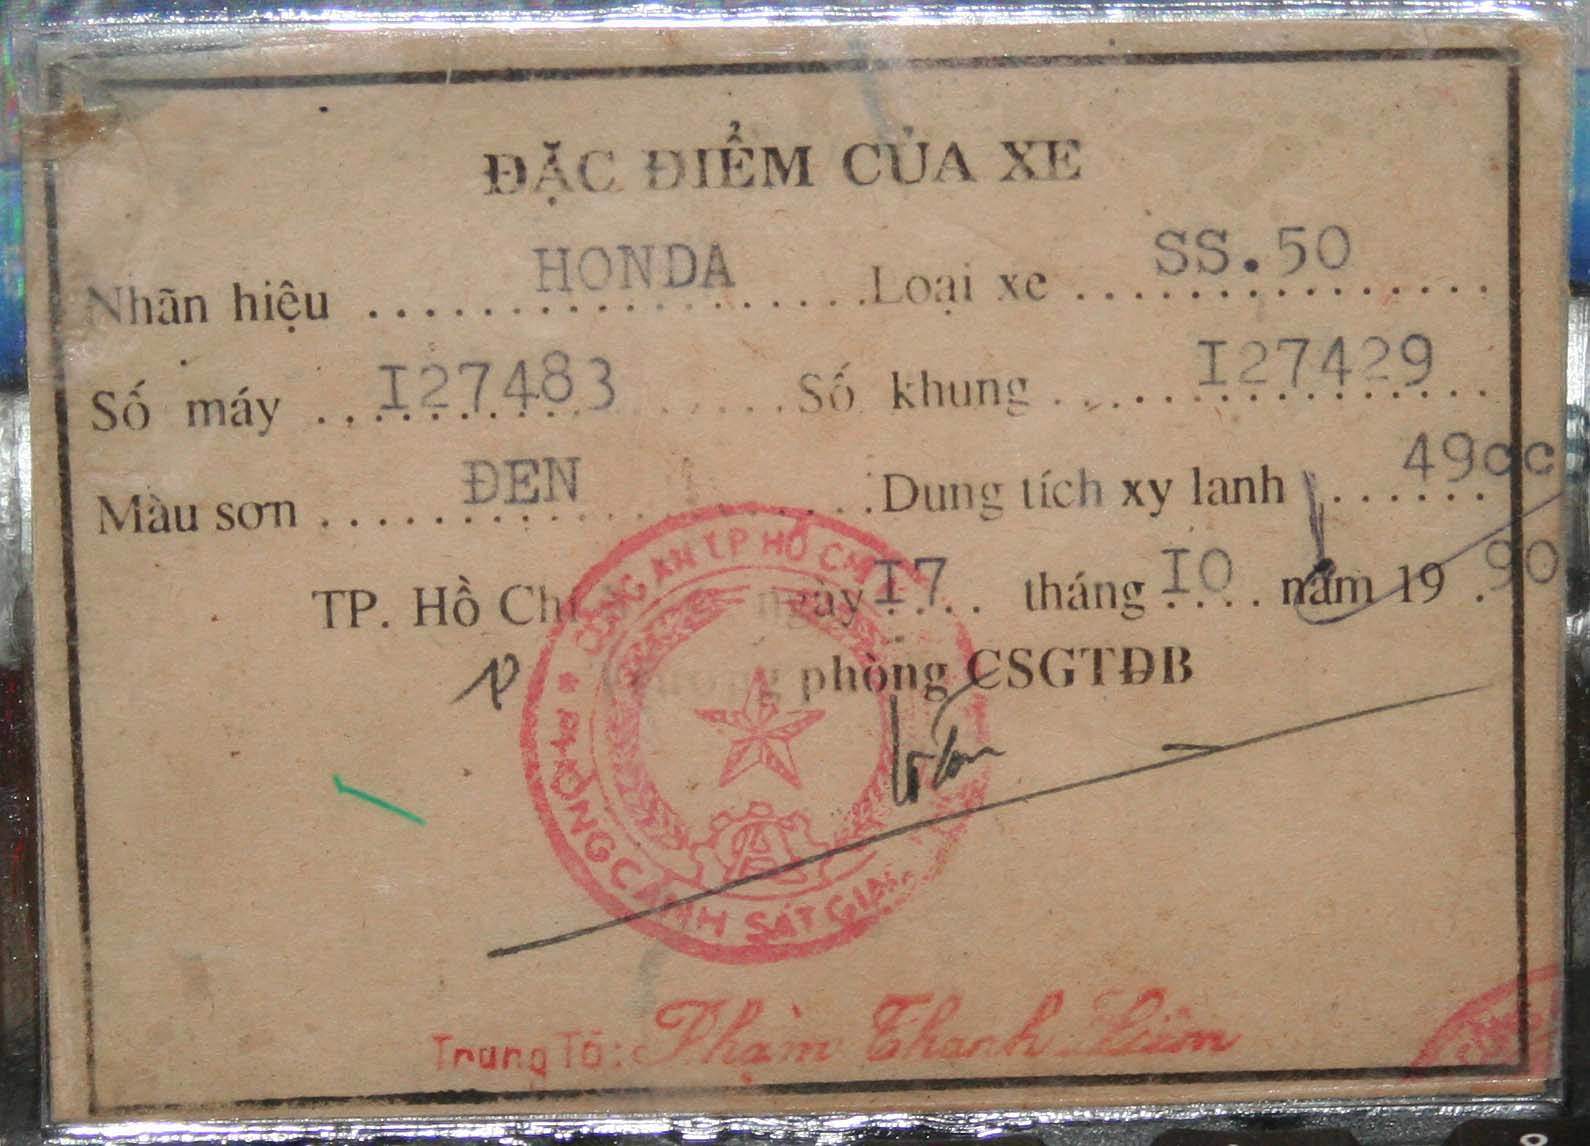 Cần bán xe Honda 67 biển số cavet 60 Biên Hòa Đồng Nai  chodocucom